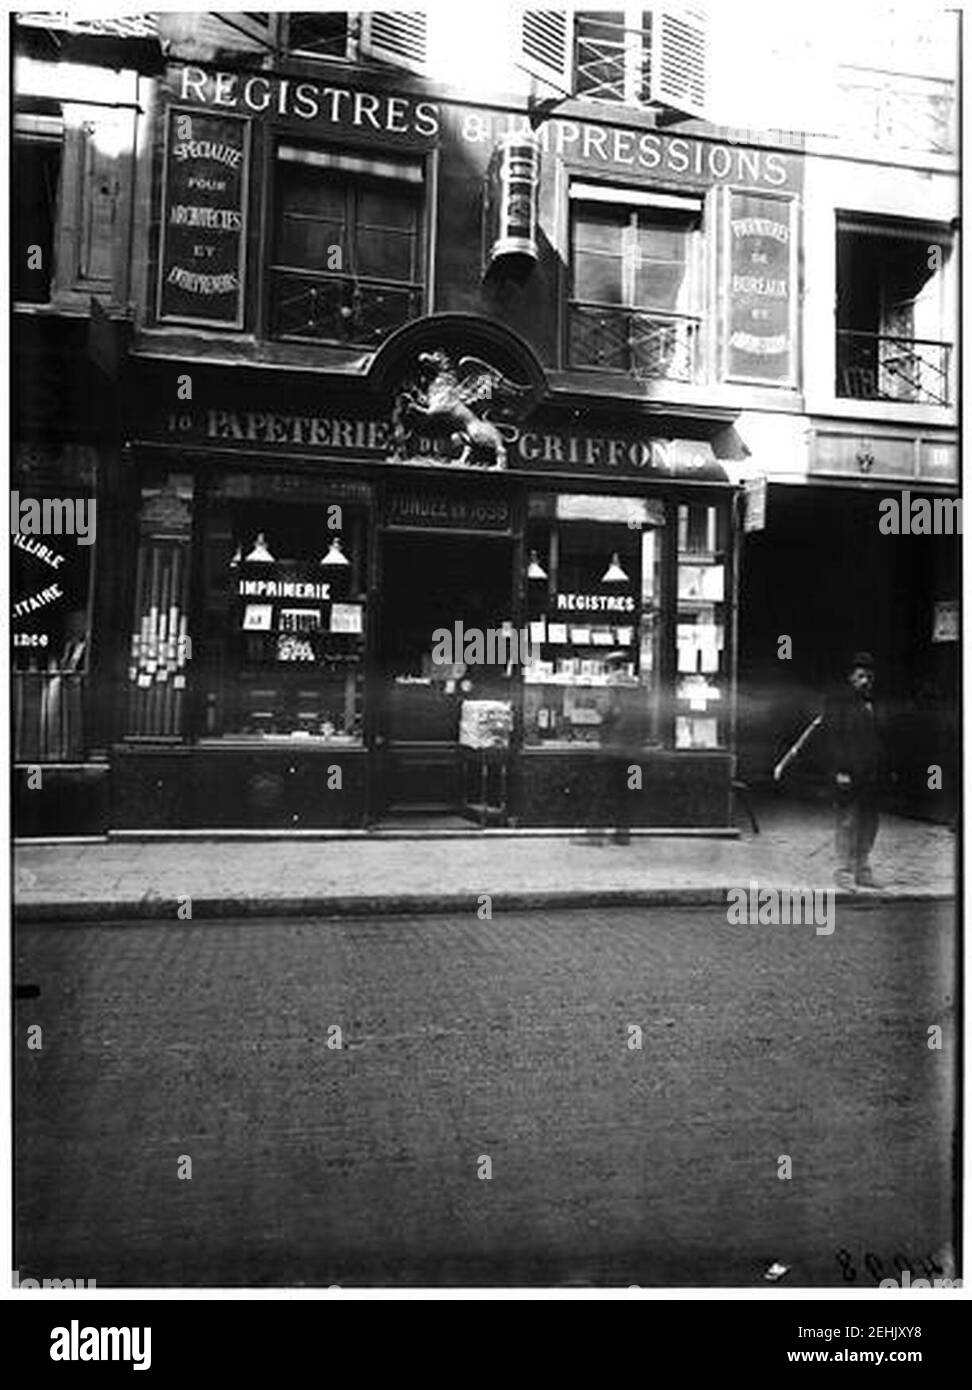 Papeterie ''Au Griffon d'Or'' - façade sur rue, vue de la devanture - Paris 06 - Médiathèque de l'architecture et du patrimoine Stockfoto